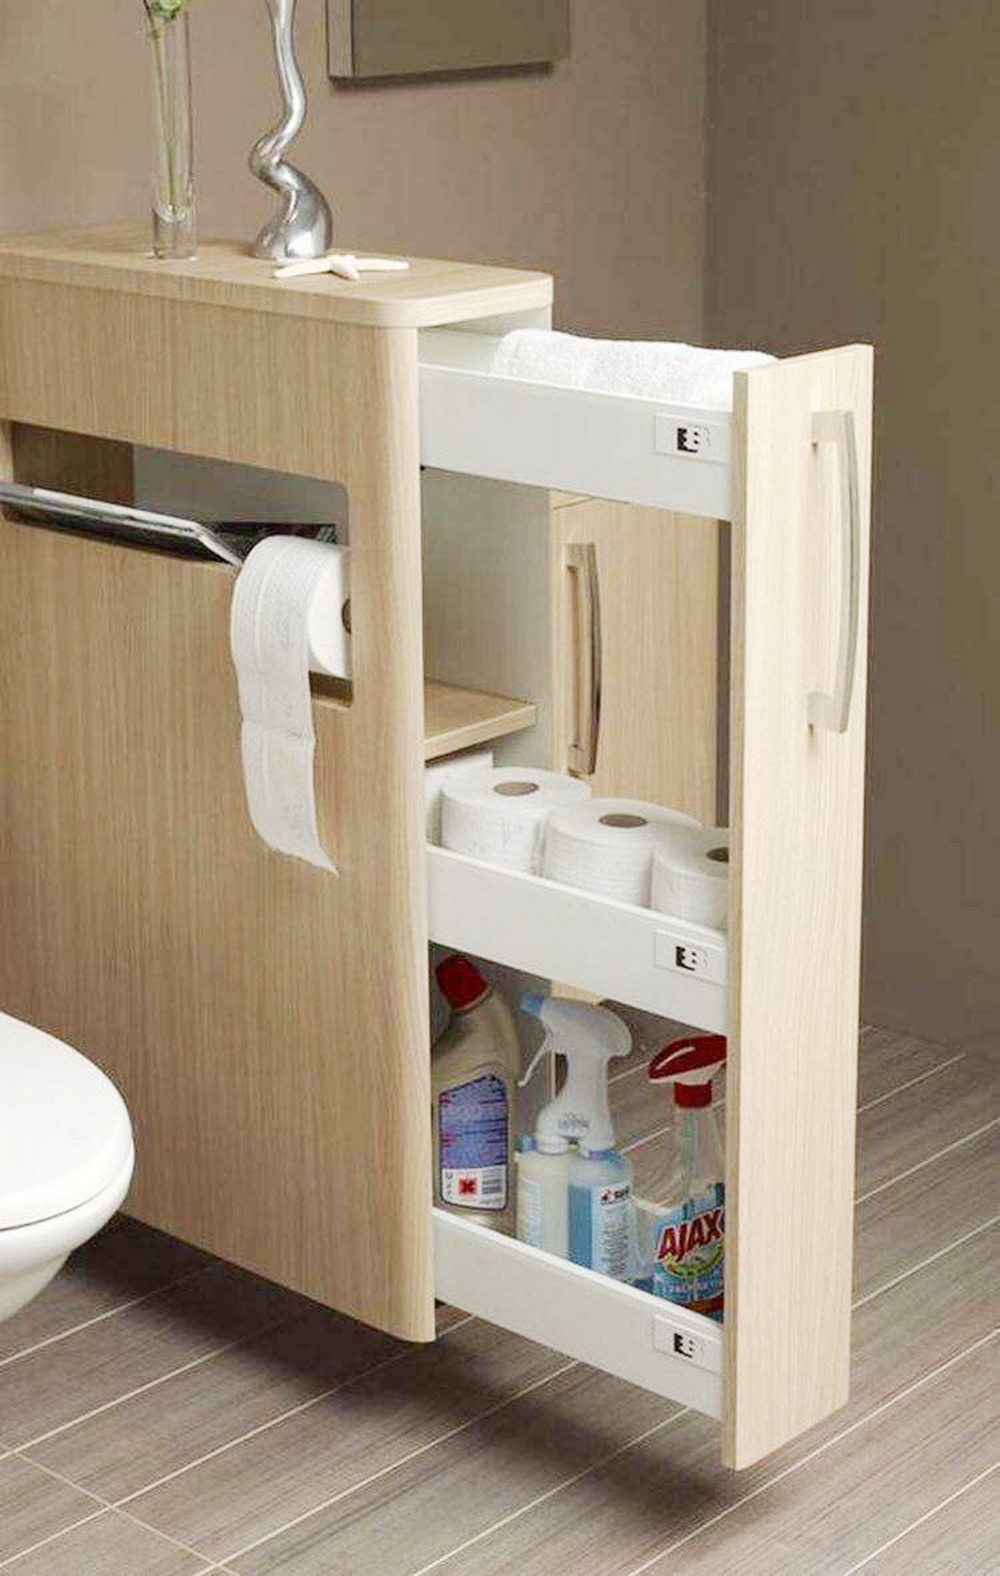 Тумба для туалета с тремя выдвижными ящиками, в которых и моющие средства, и туалетная бумага, и полотенце